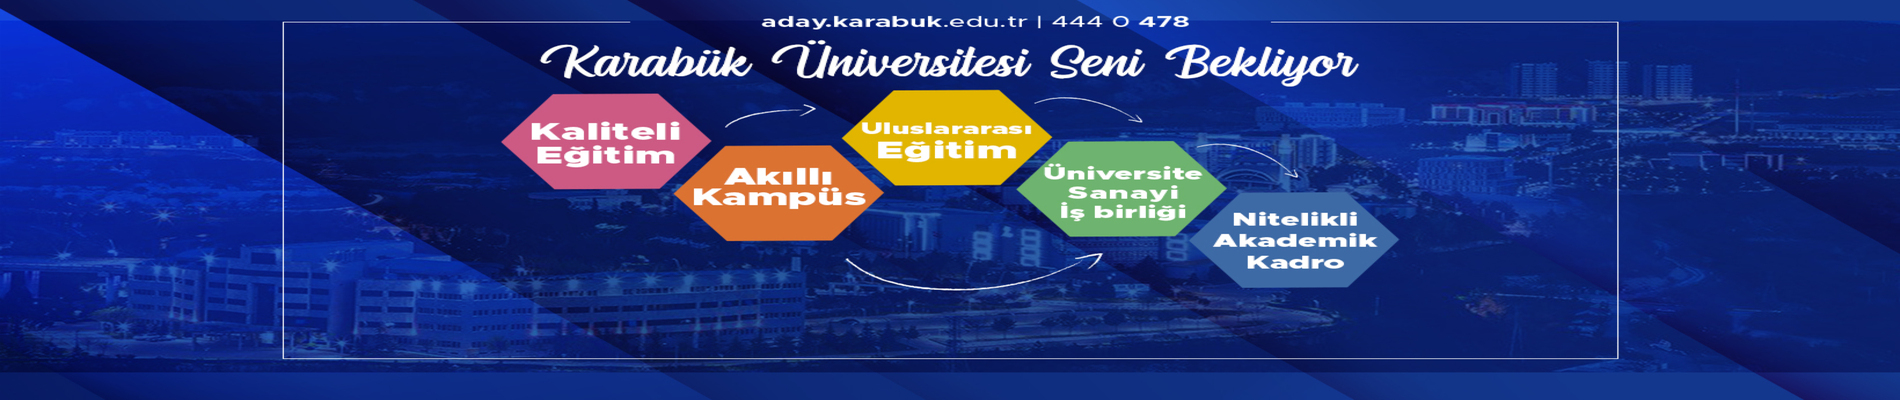 Karabük Üniversitesi Seni Bekliyor